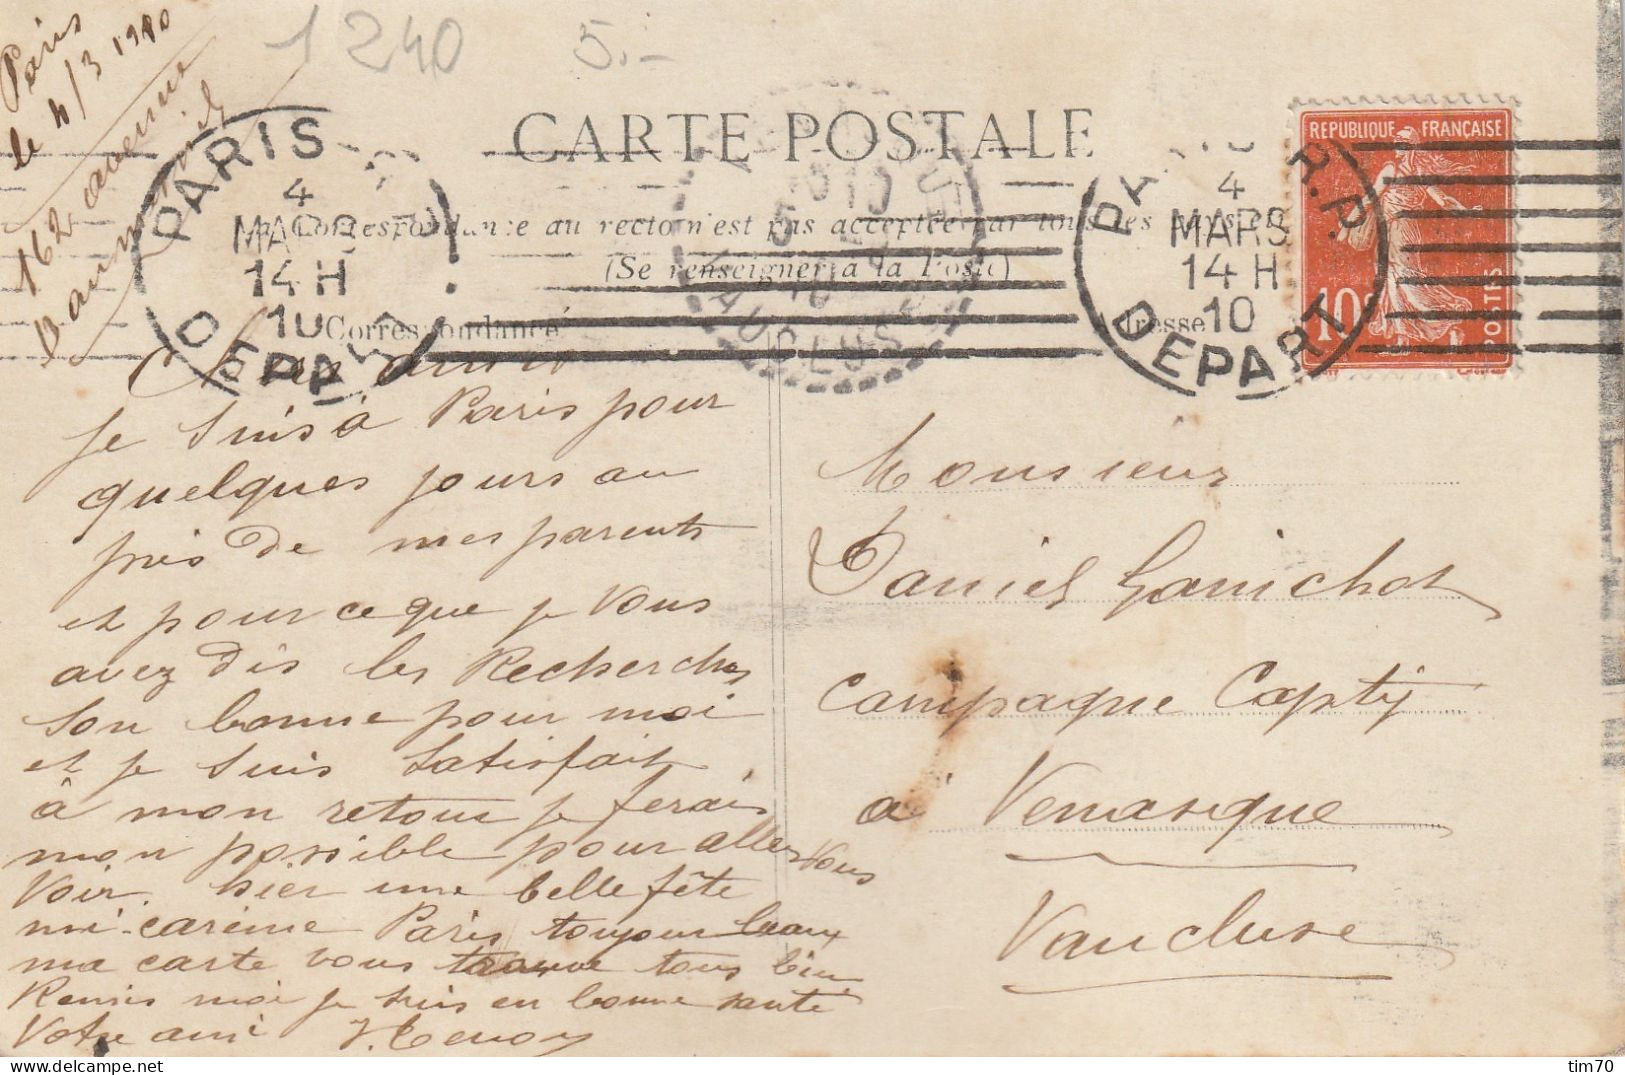 PARIS  DEPART   CRUE DE LA  SEINE 1910     B D   DIDEROT - Überschwemmung 1910